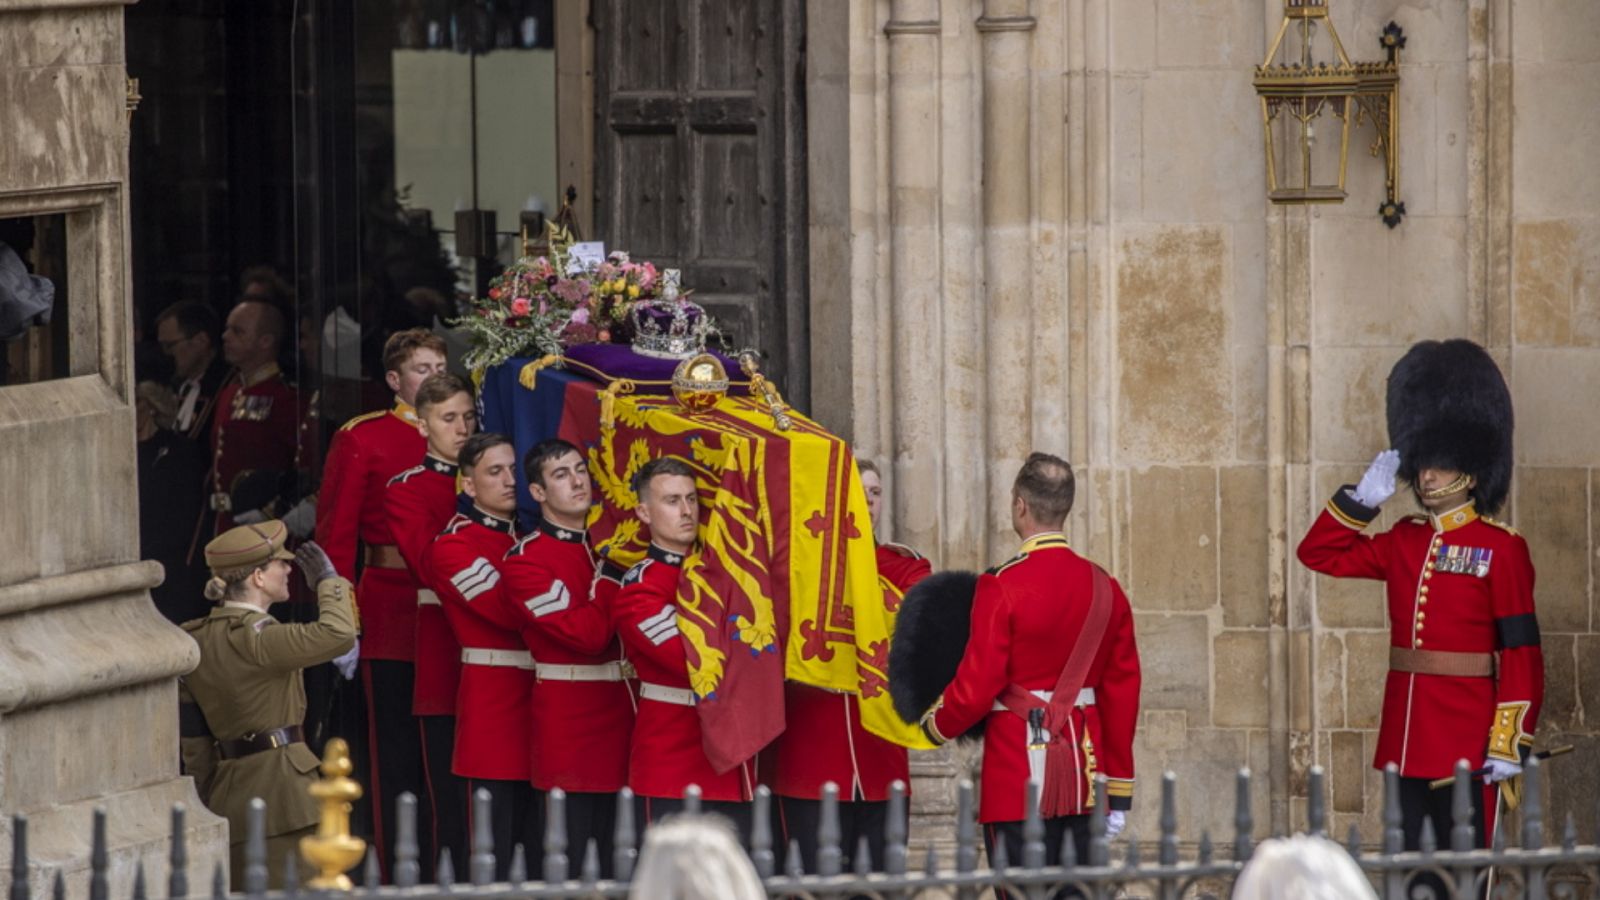 Especial informativo - Funeral de Estado por la Reina Isabel II